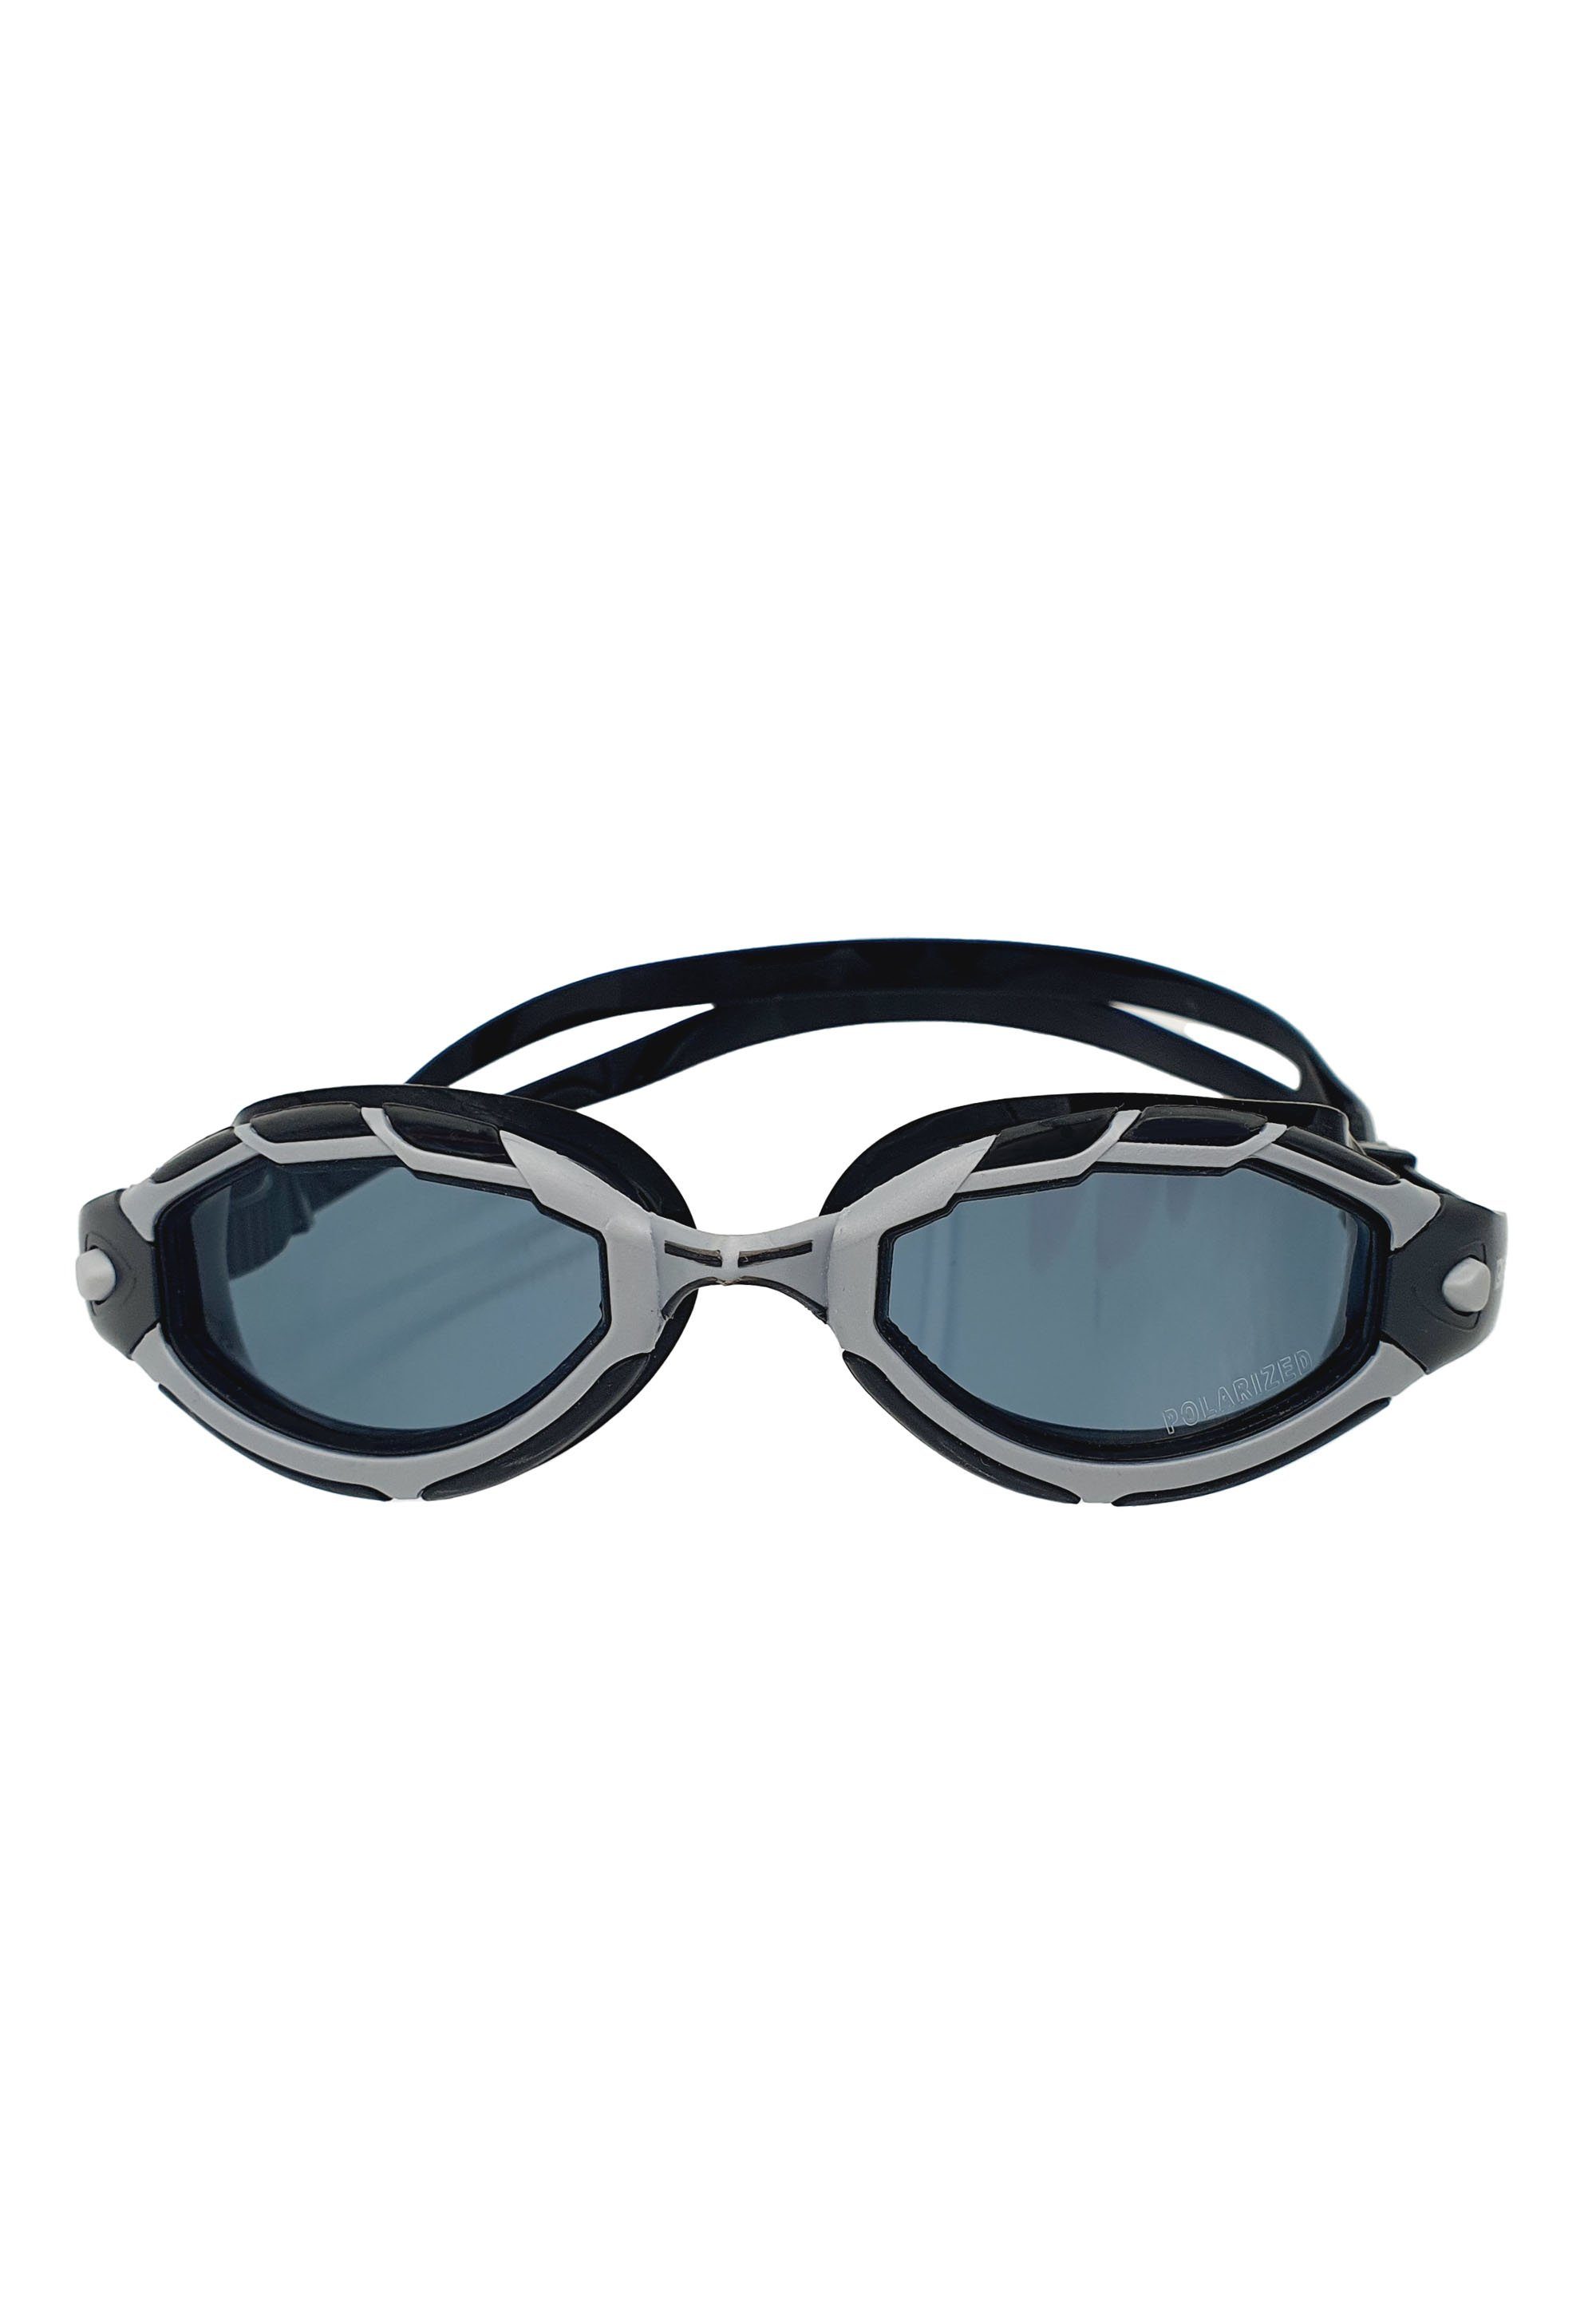 Beco Sicht polarisierenden Monterey, klare und Beermann mit Linsen für Taucherbrille kontrastreiche